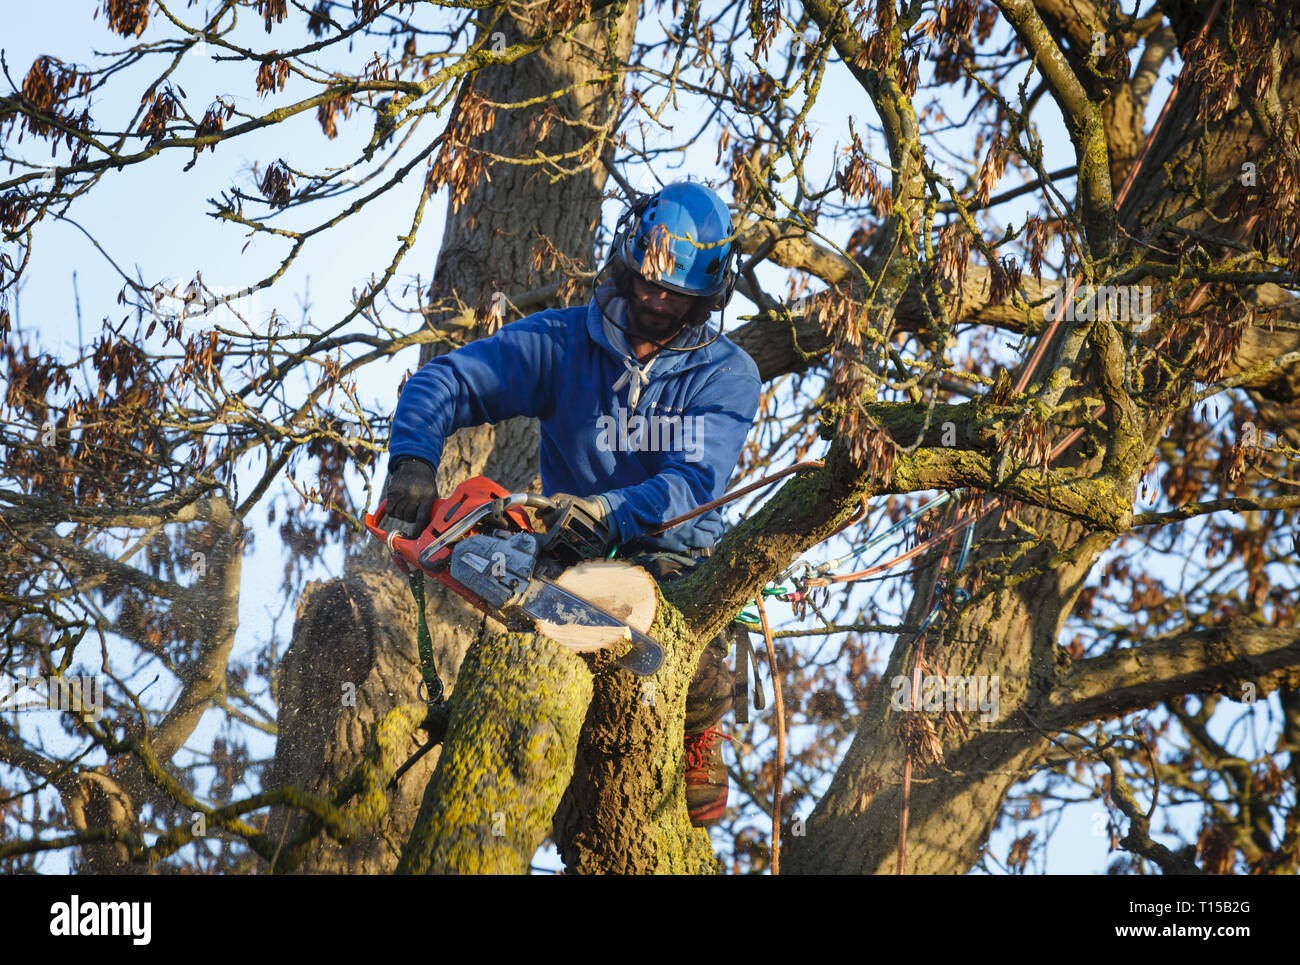 Buckingham, Regno Unito - 30 gennaio 2019. Un albero chirurgo utilizza una sega a nastro per il taglio di un ramo da un albero di quercia. Foto Stock